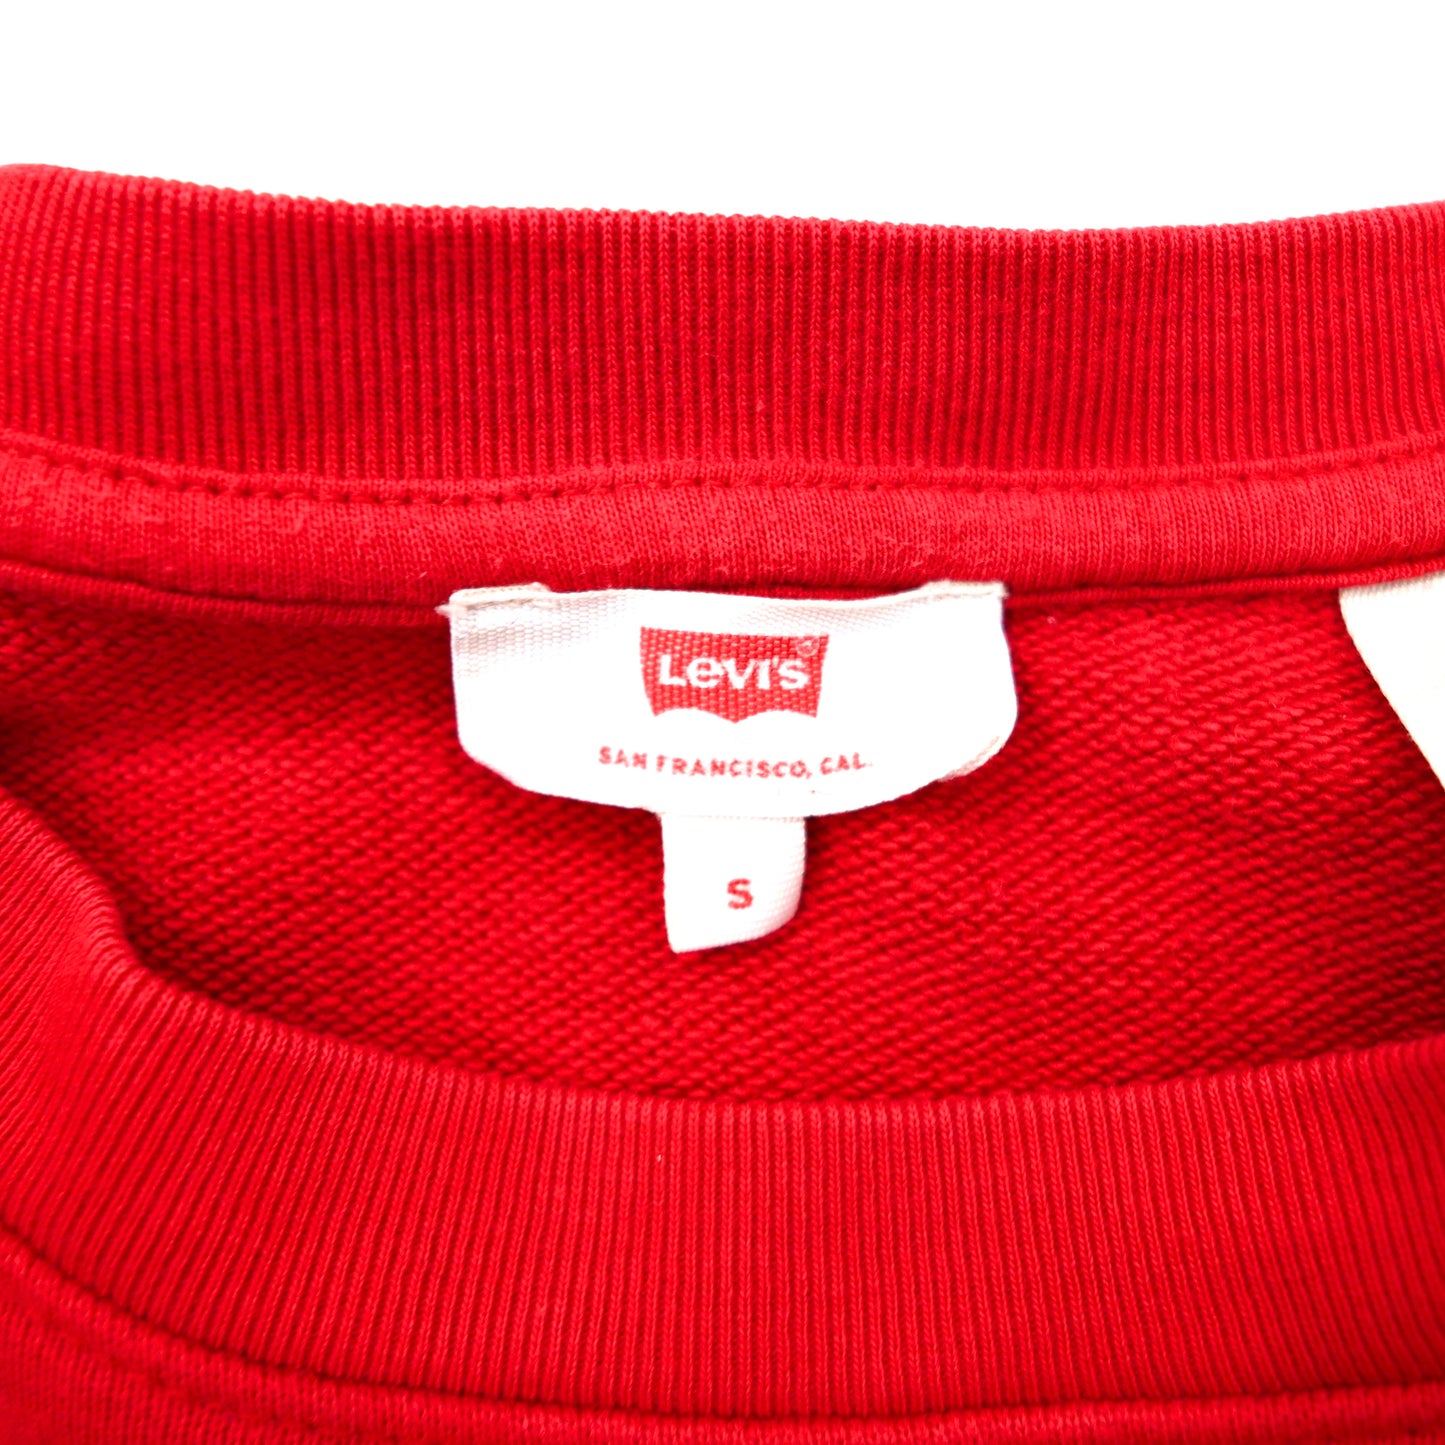 Levi's クルーネックスウェット S レッド コットン 袖刺繍 ハイビスカス